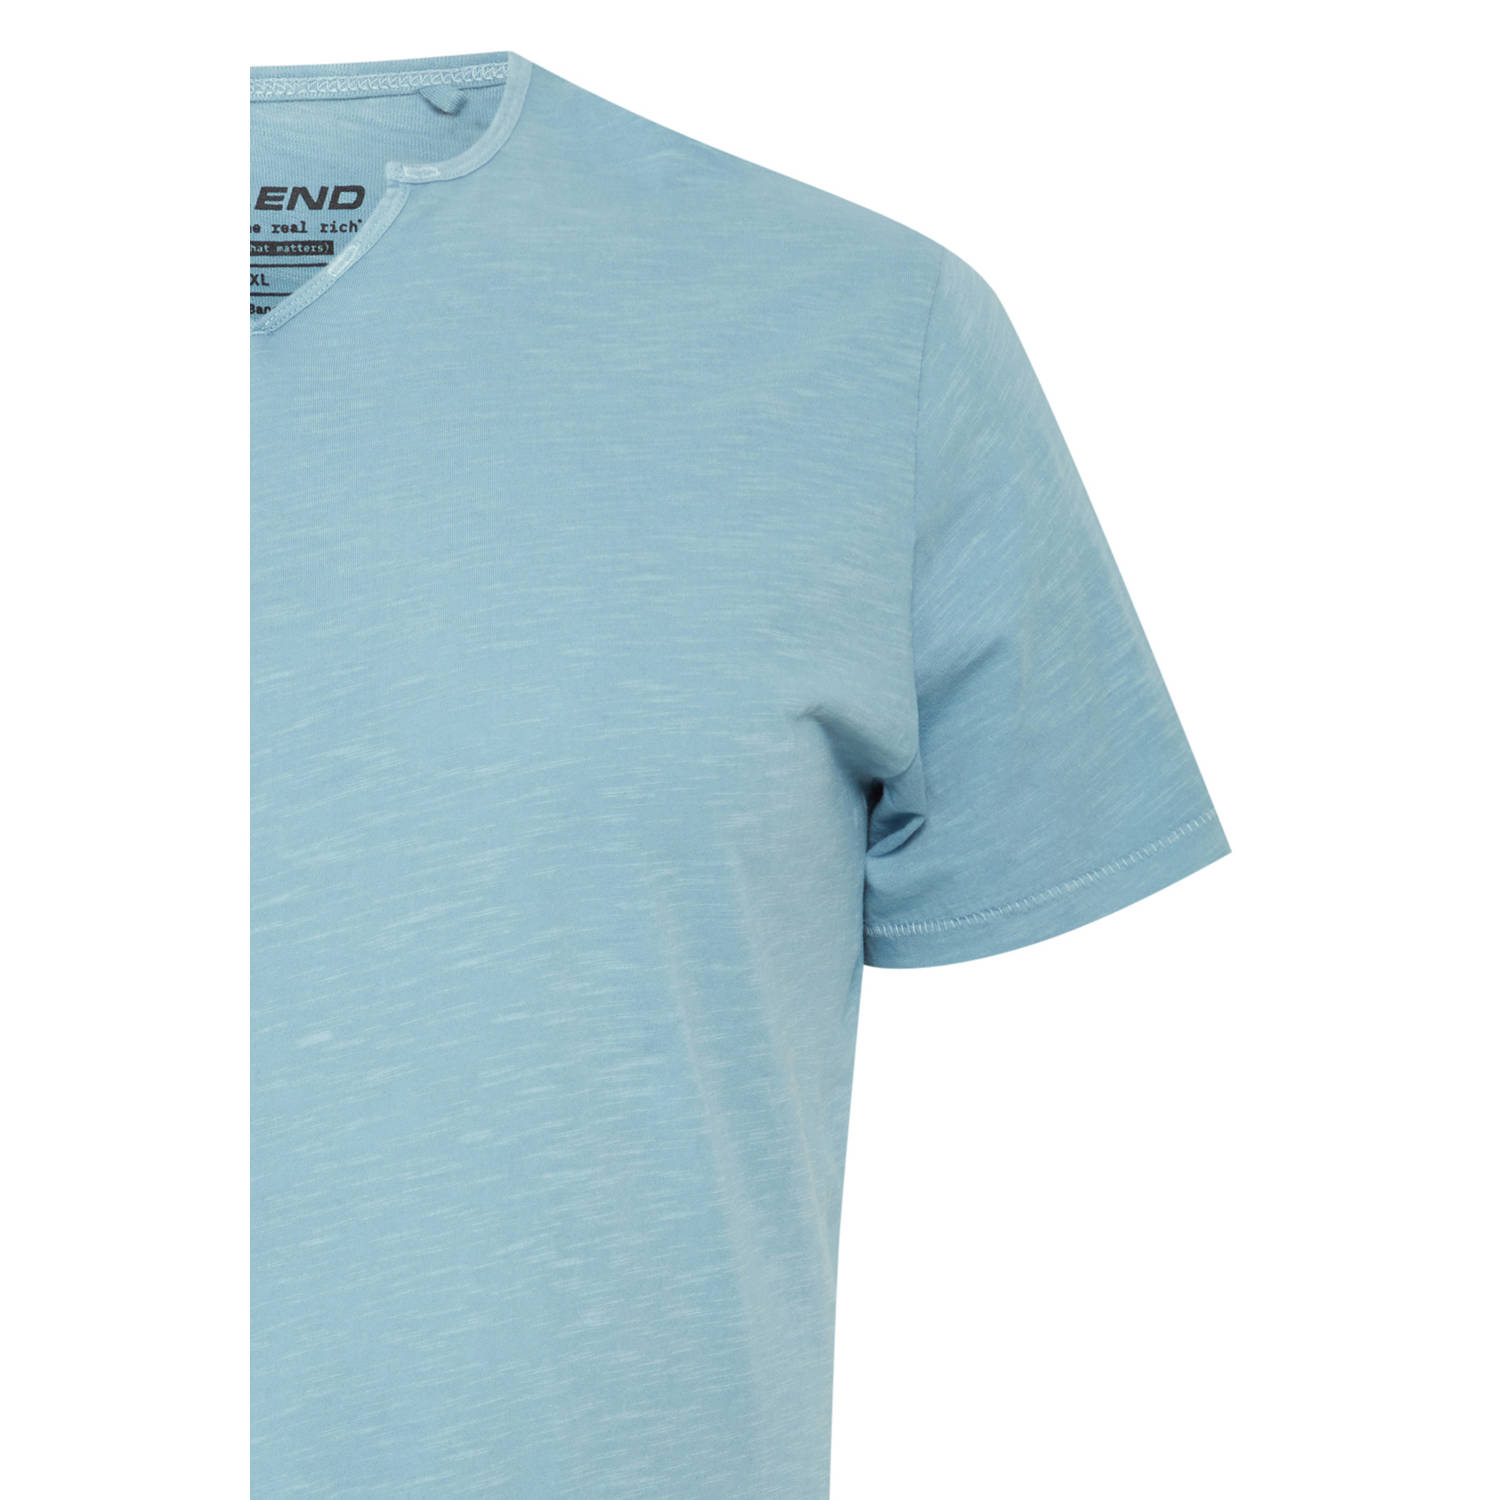 Blend Big T-shirt Plus Size dusty blue